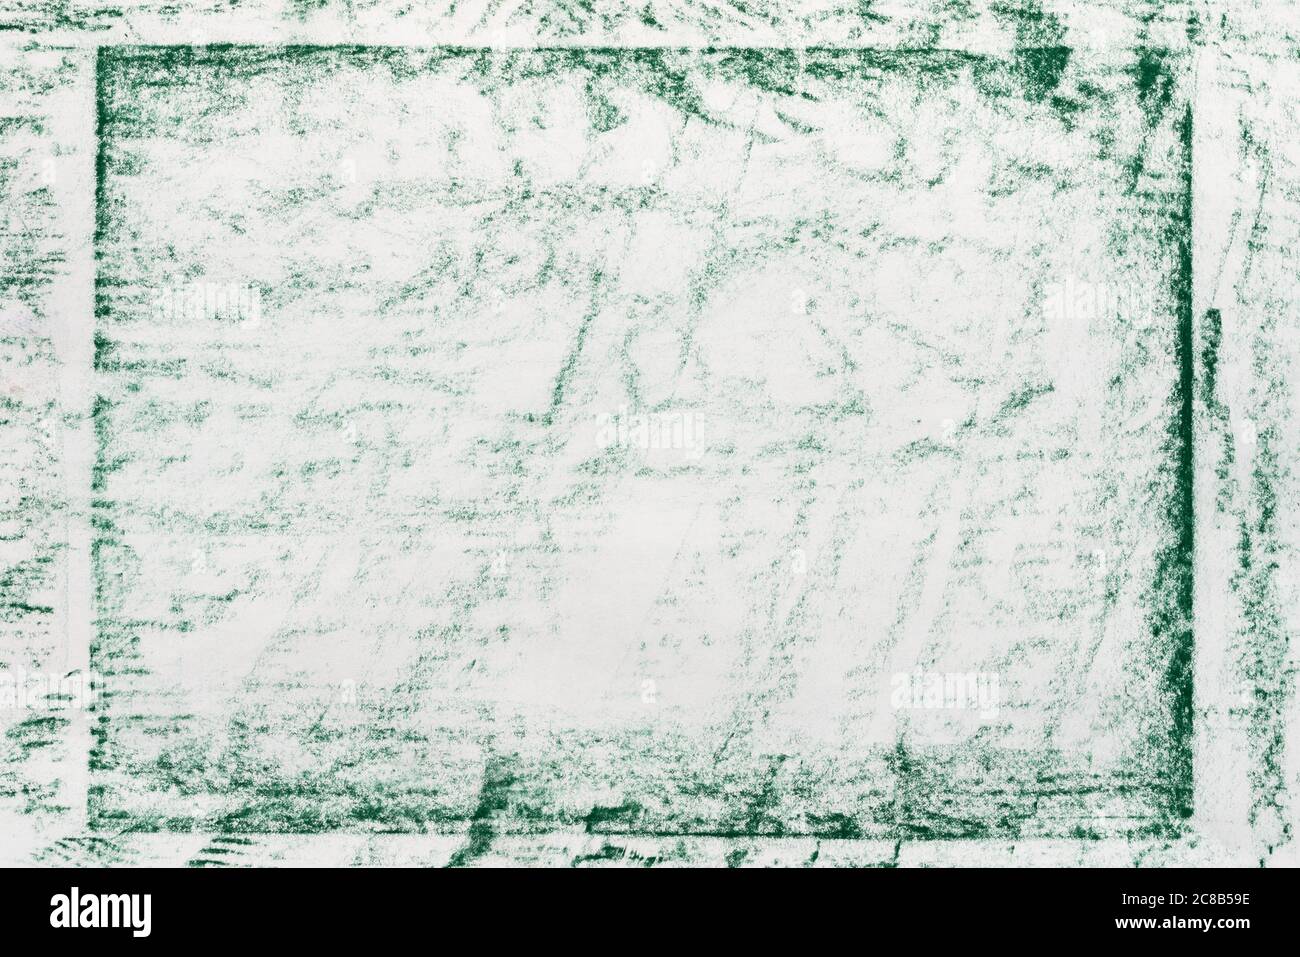 couleur verte crayon abstrait dessin papier texture de fond Banque D'Images